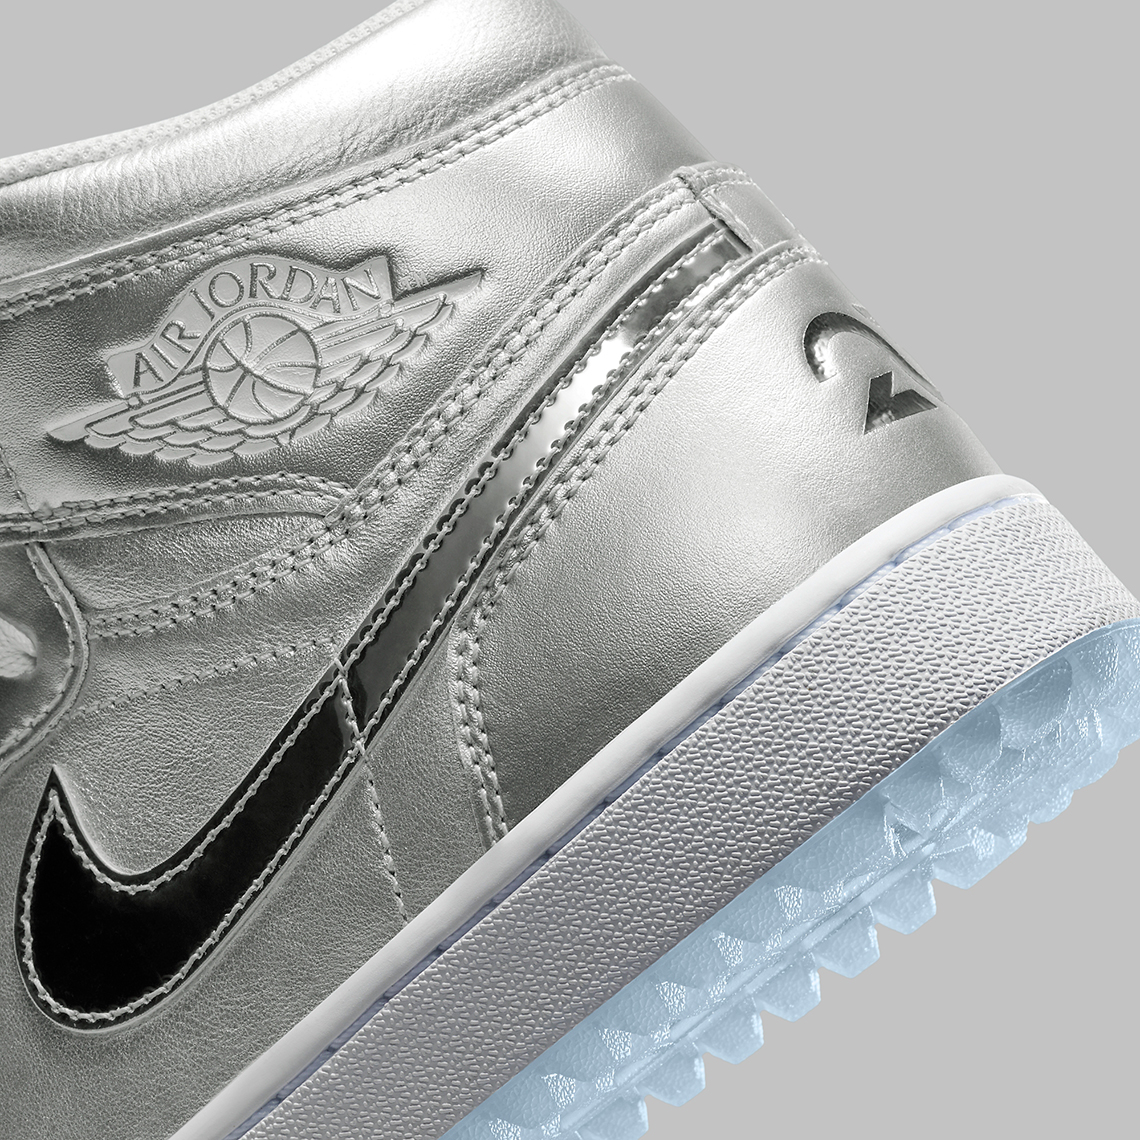 Air Jordan XXXIV Zapatillas de baloncesto Niño a Blanco Metallic Silver Chrome Gift Giving Fd6815 001 6